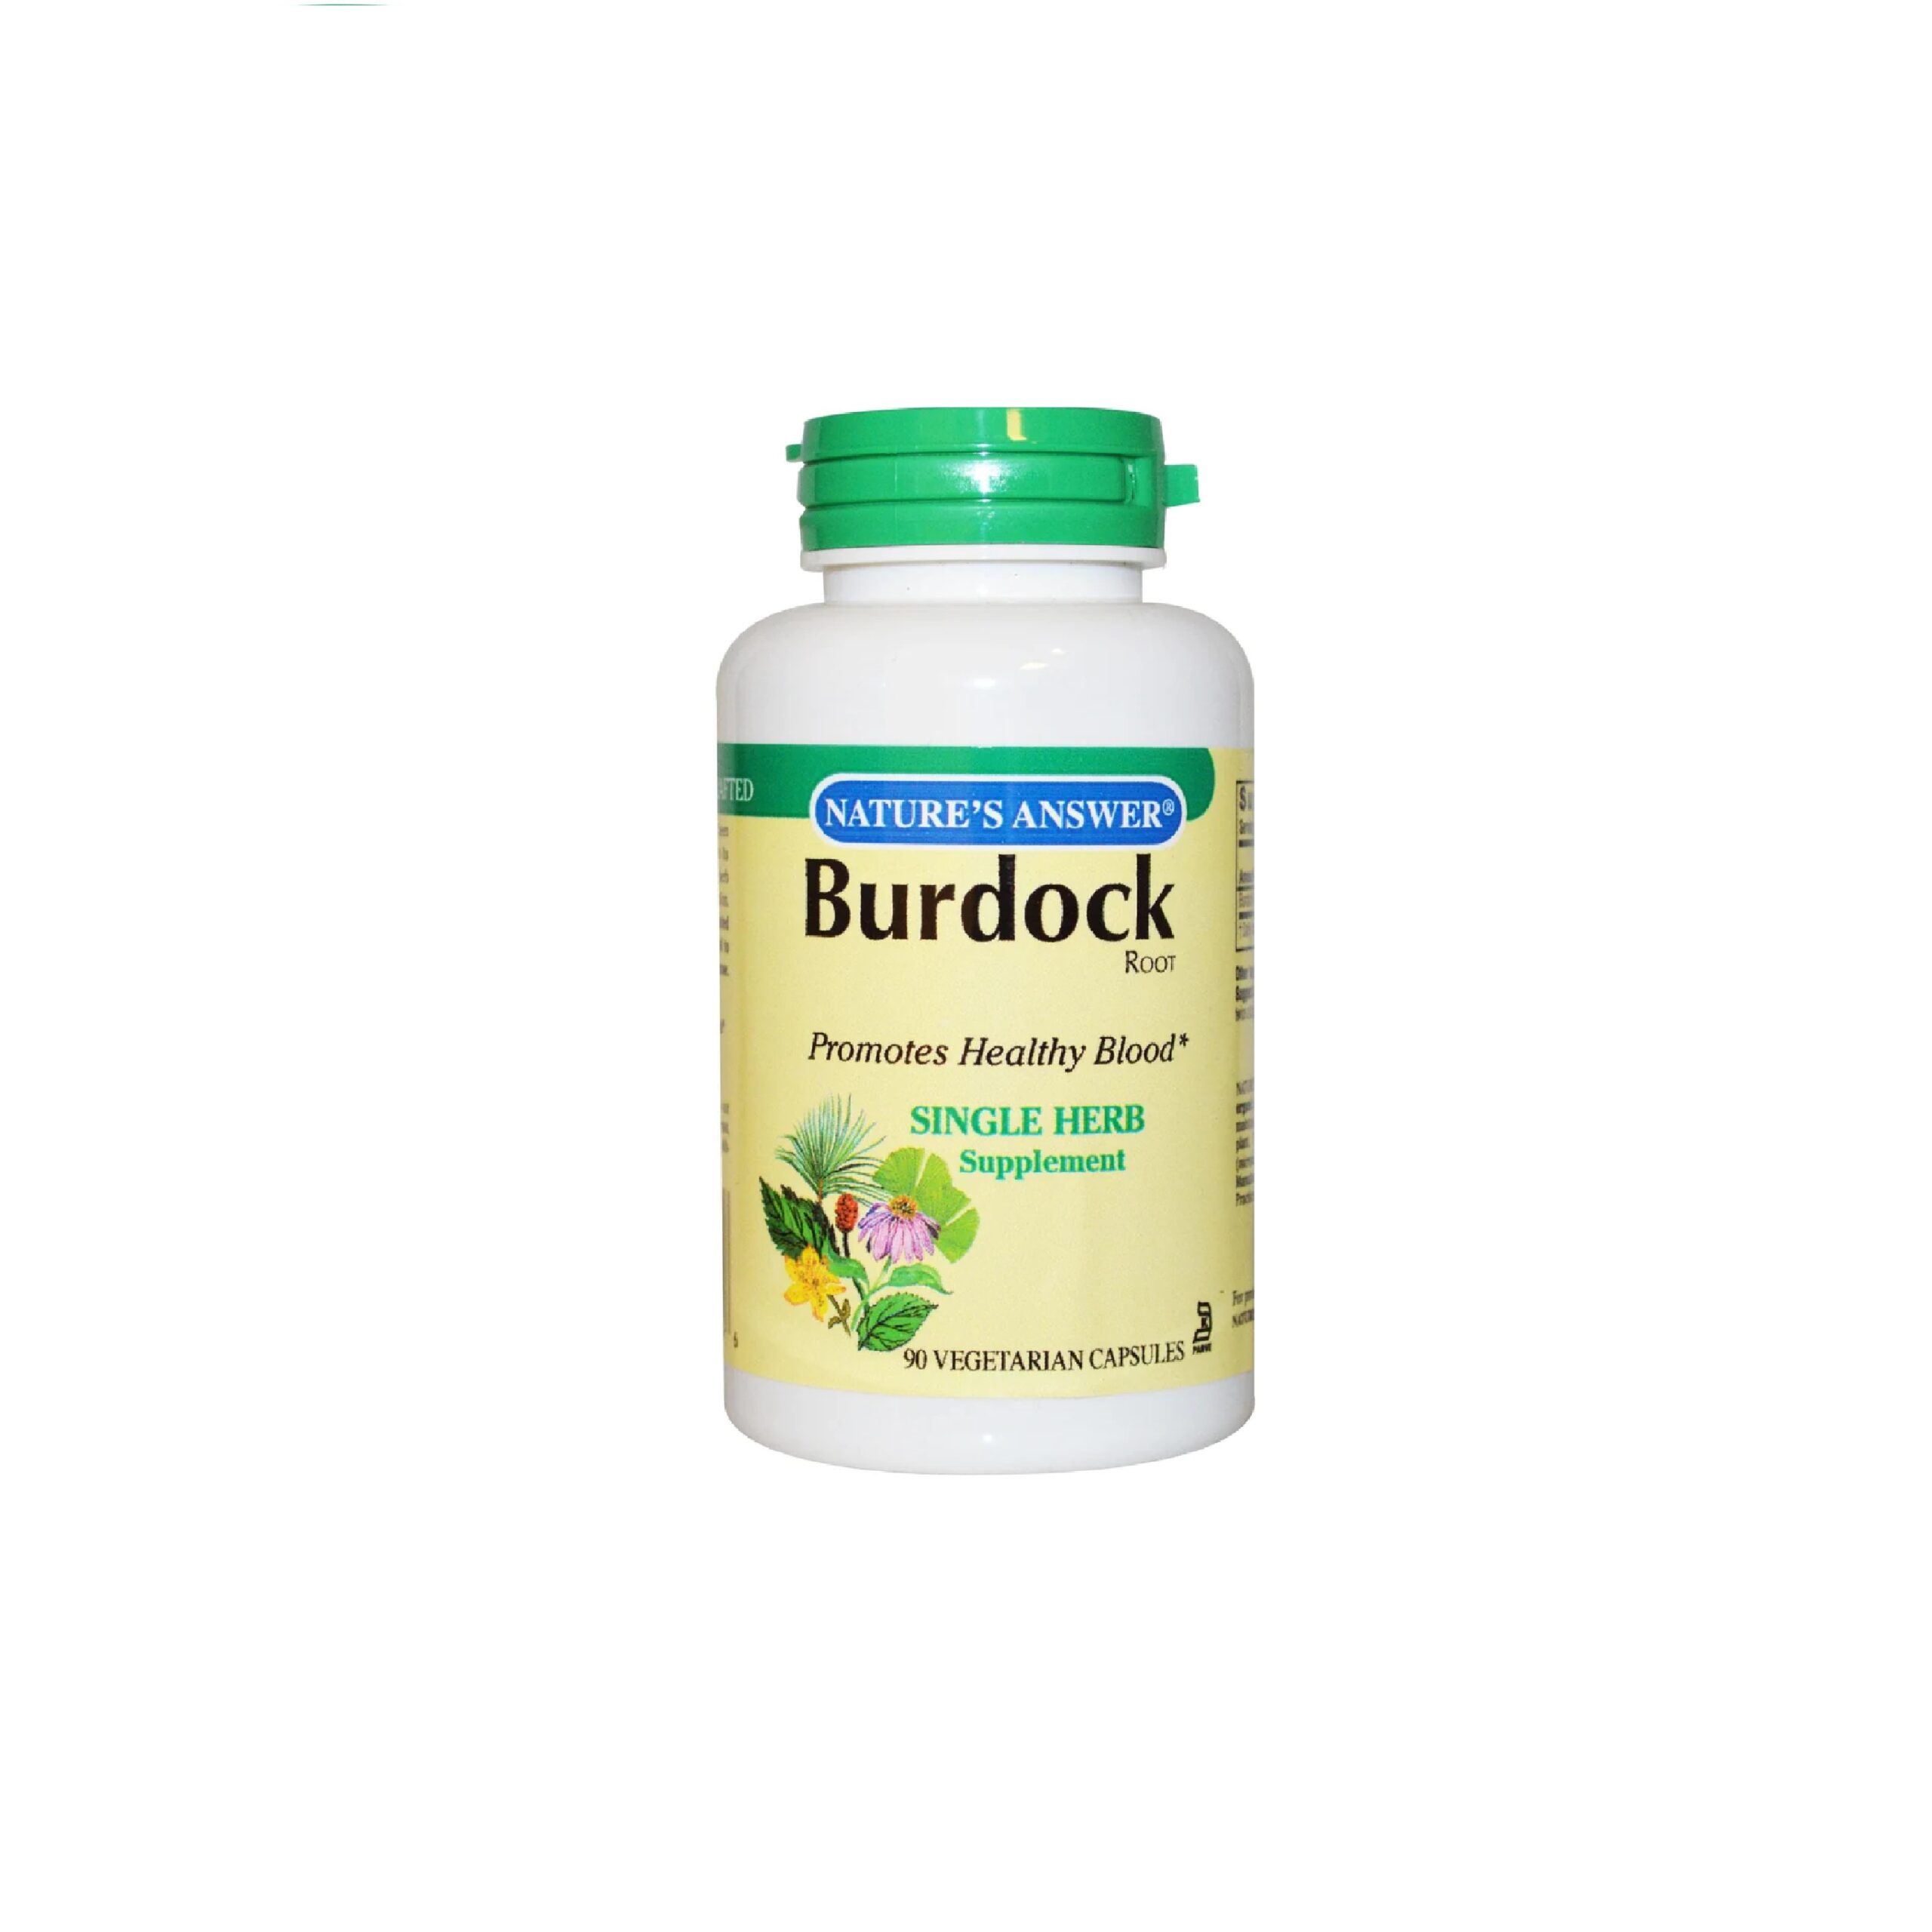 Benefits of Burdock Supplements